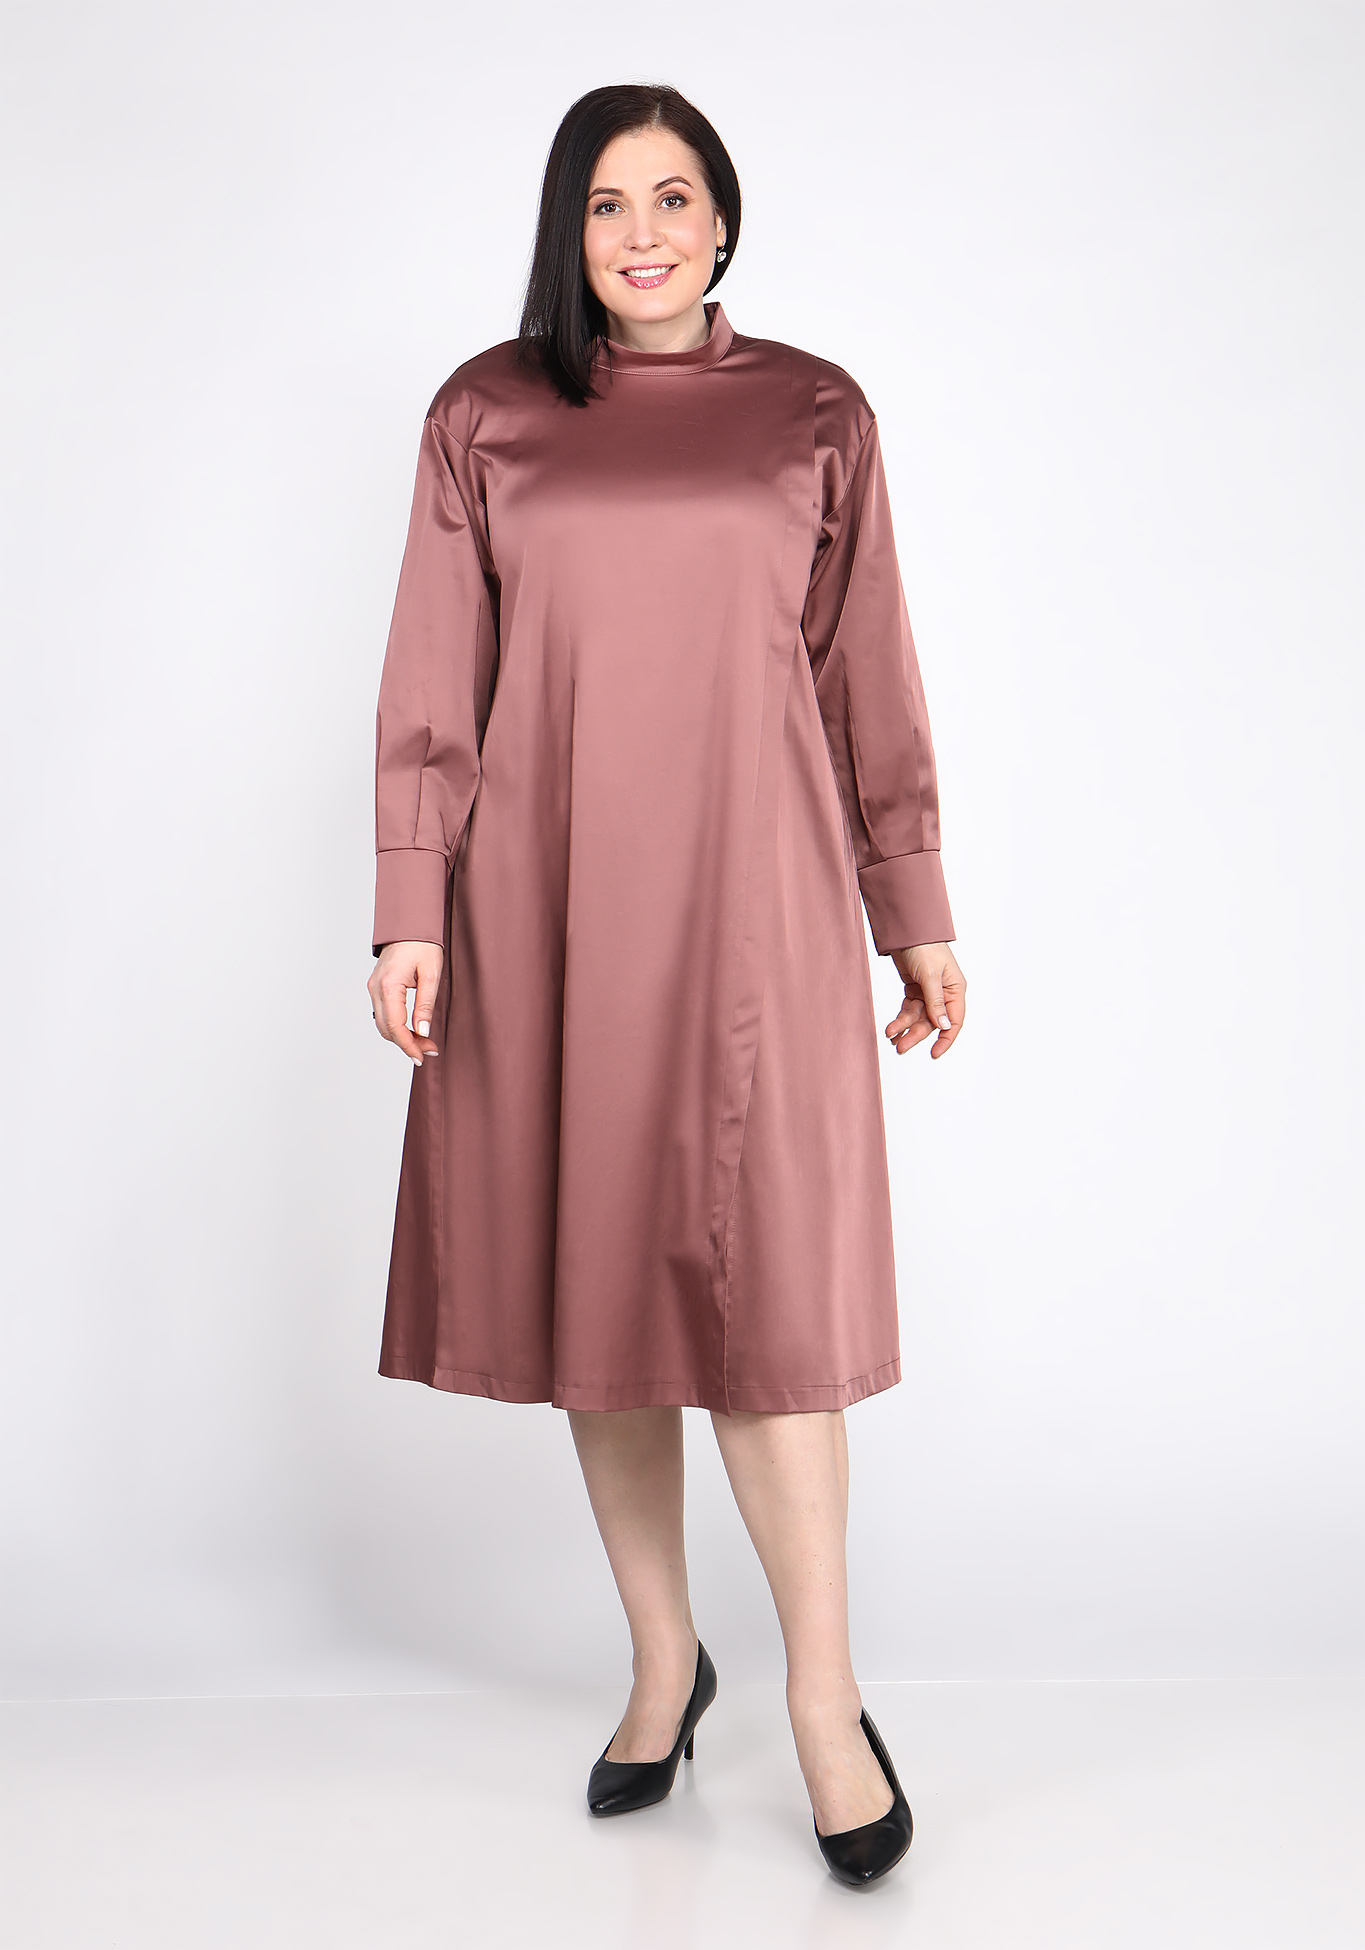 Платье с поясом на пуговицах Sarah Morenberg, размер 48, цвет тёмно-лиловый - фото 3